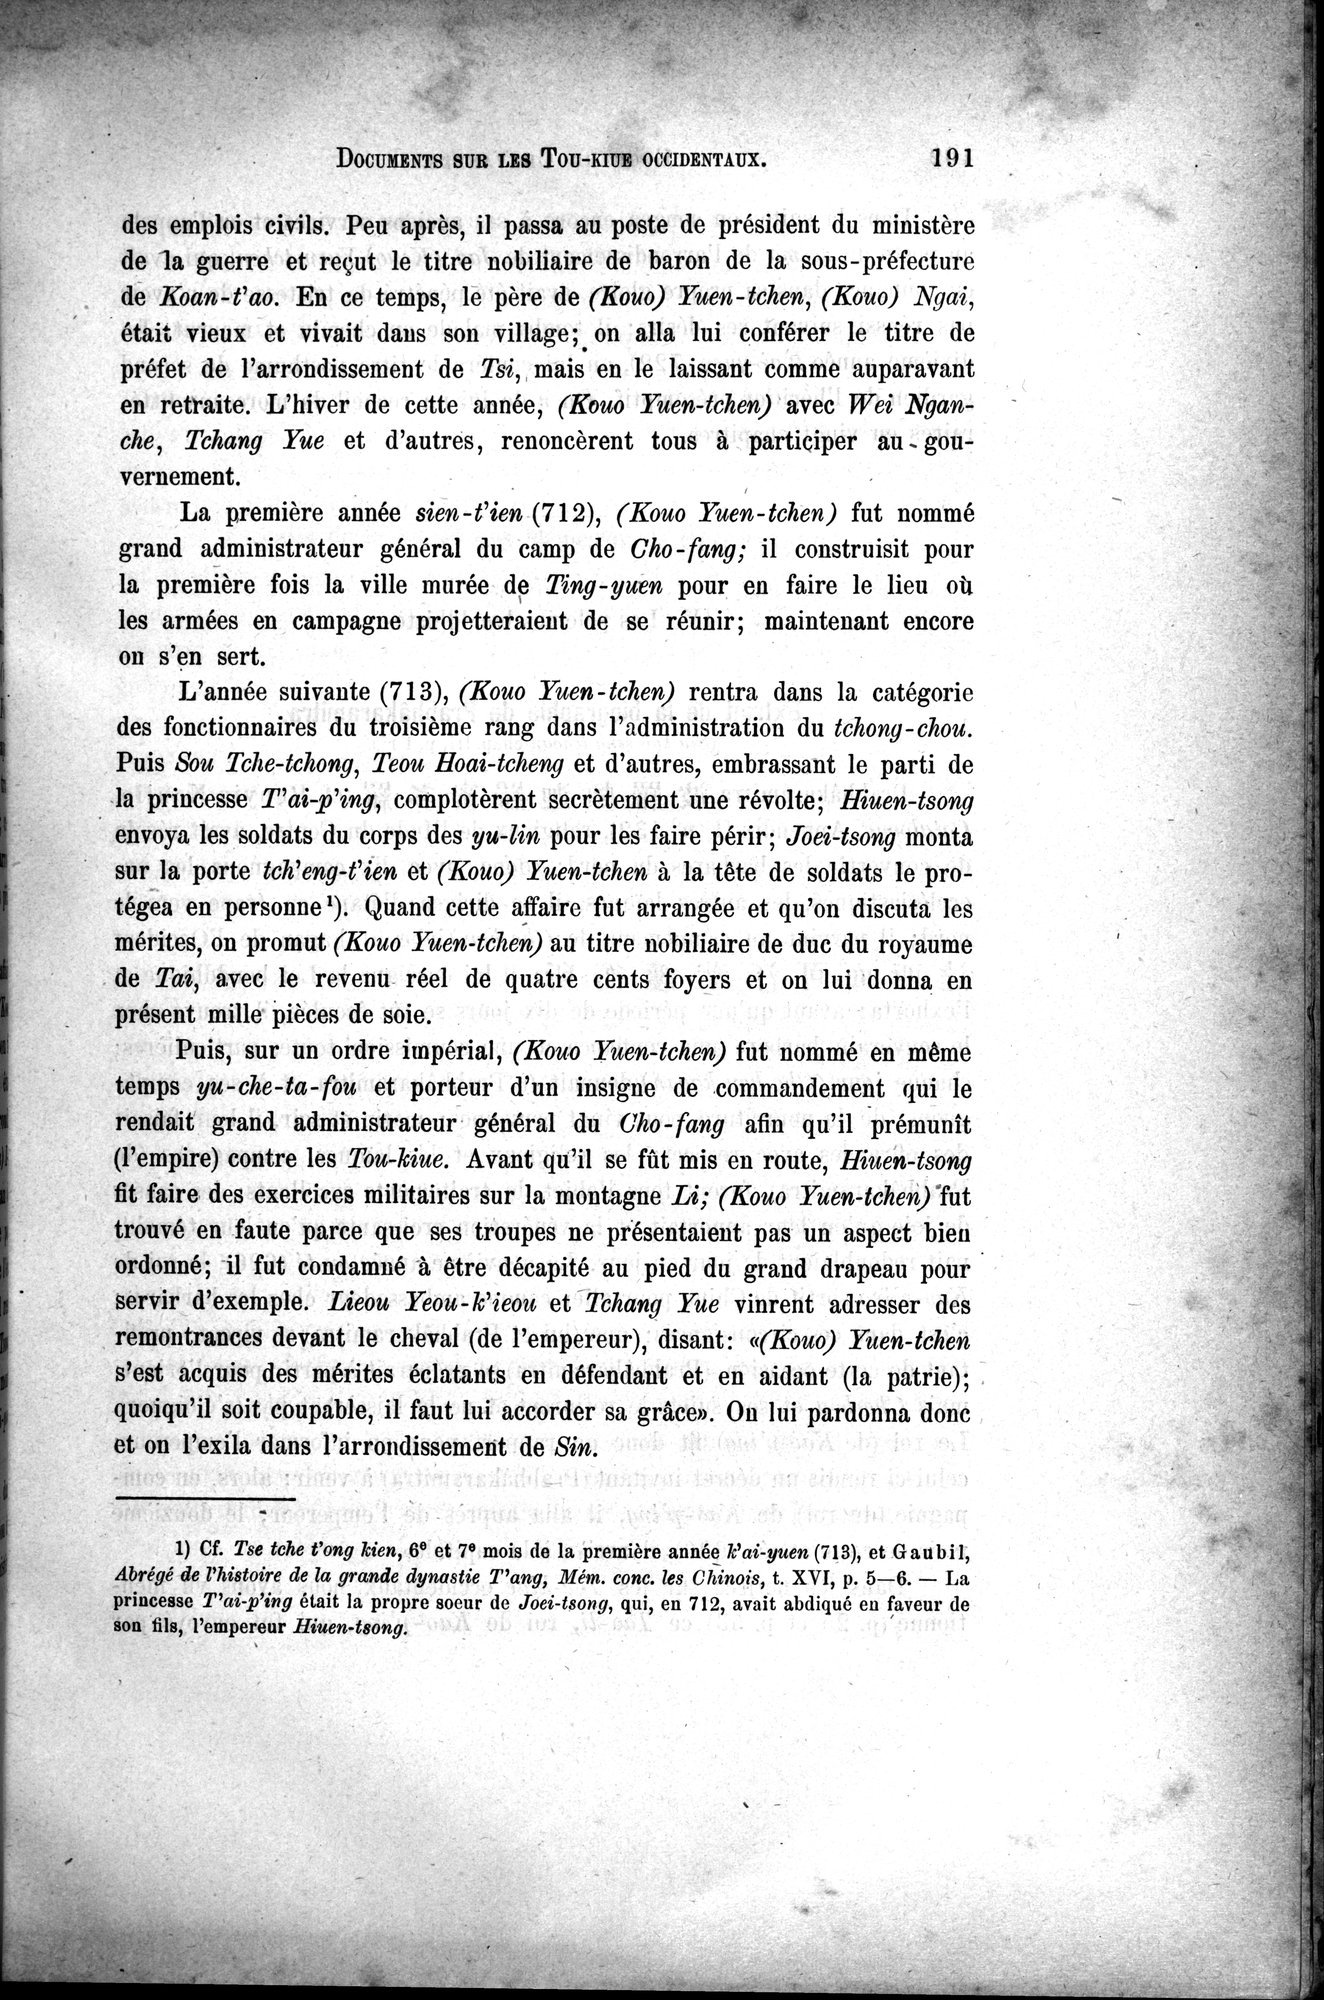 Documents sur les Tou-kiue (Turcs) occidentaux : vol.1 / Page 201 (Grayscale High Resolution Image)